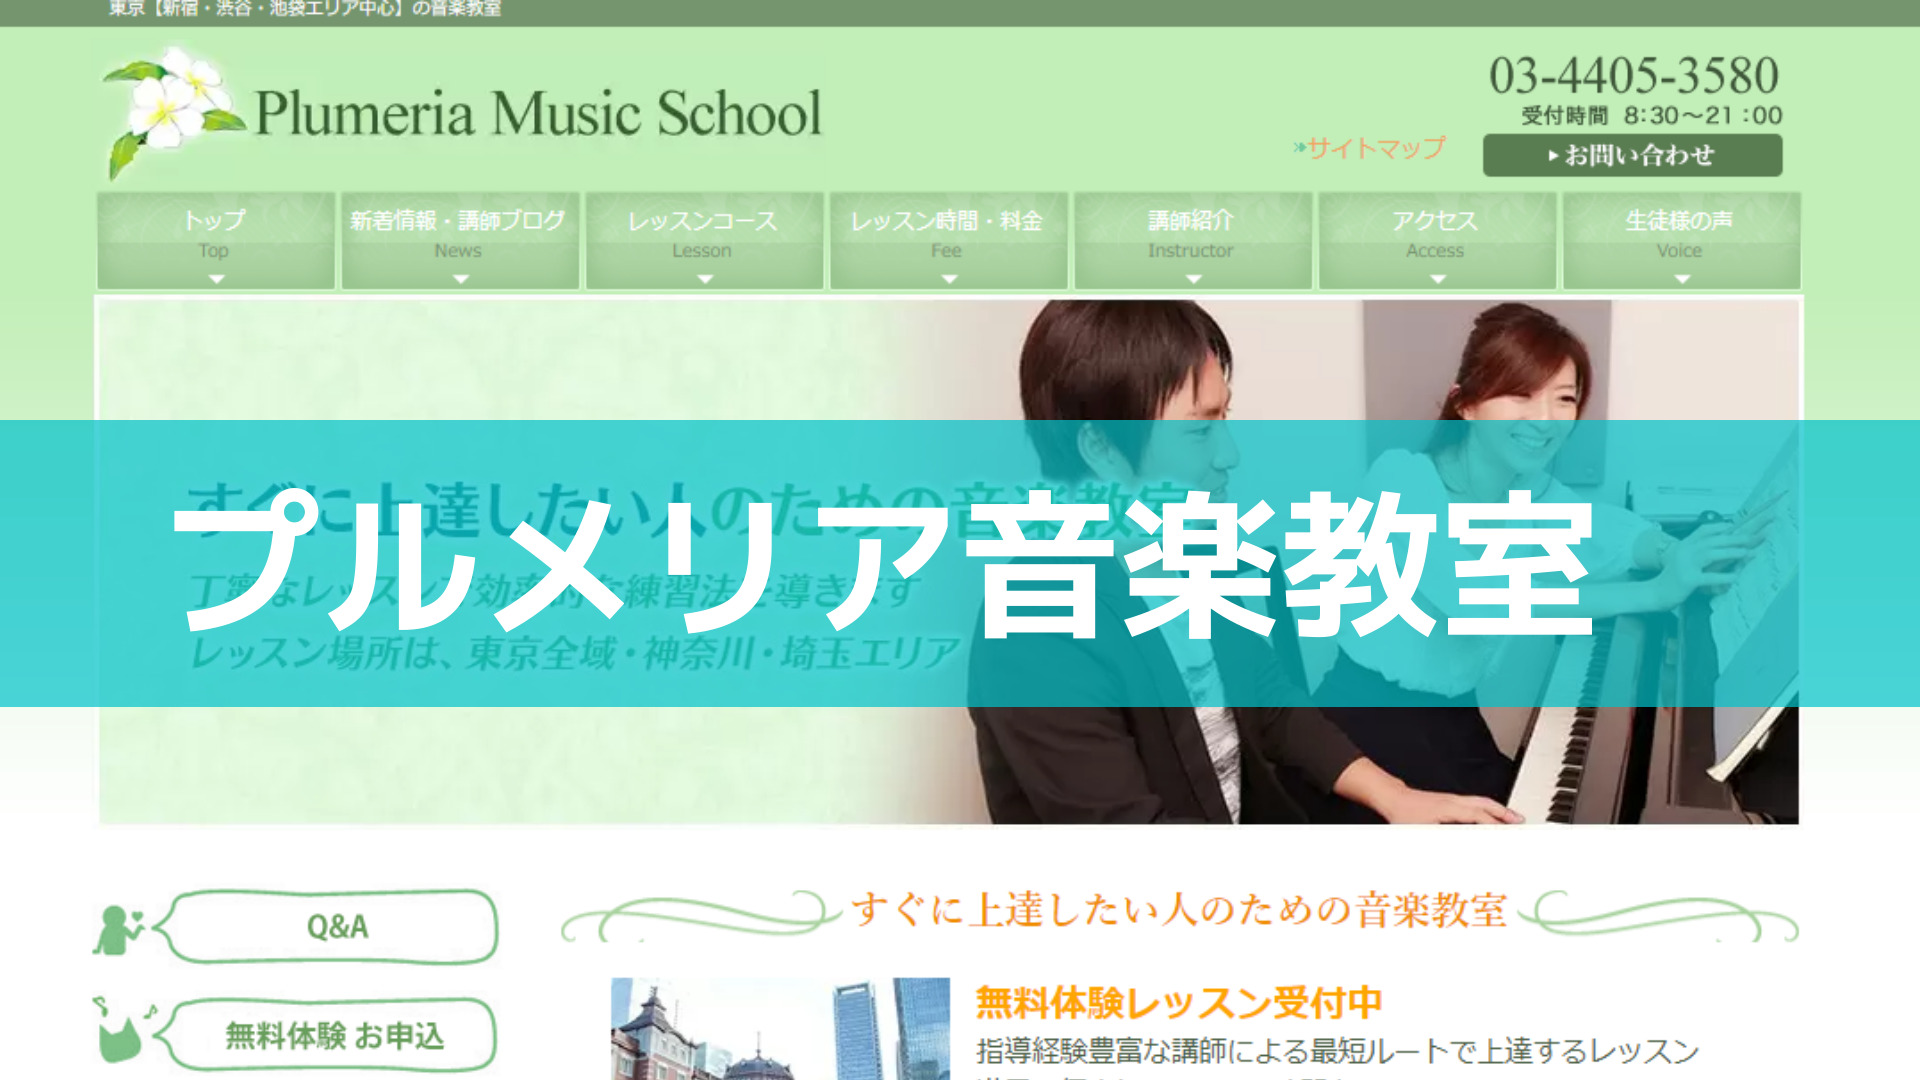 <第4位> トップクラスの音大出身講師による渋谷でのピアノレッスン【プルメリア音楽教室】